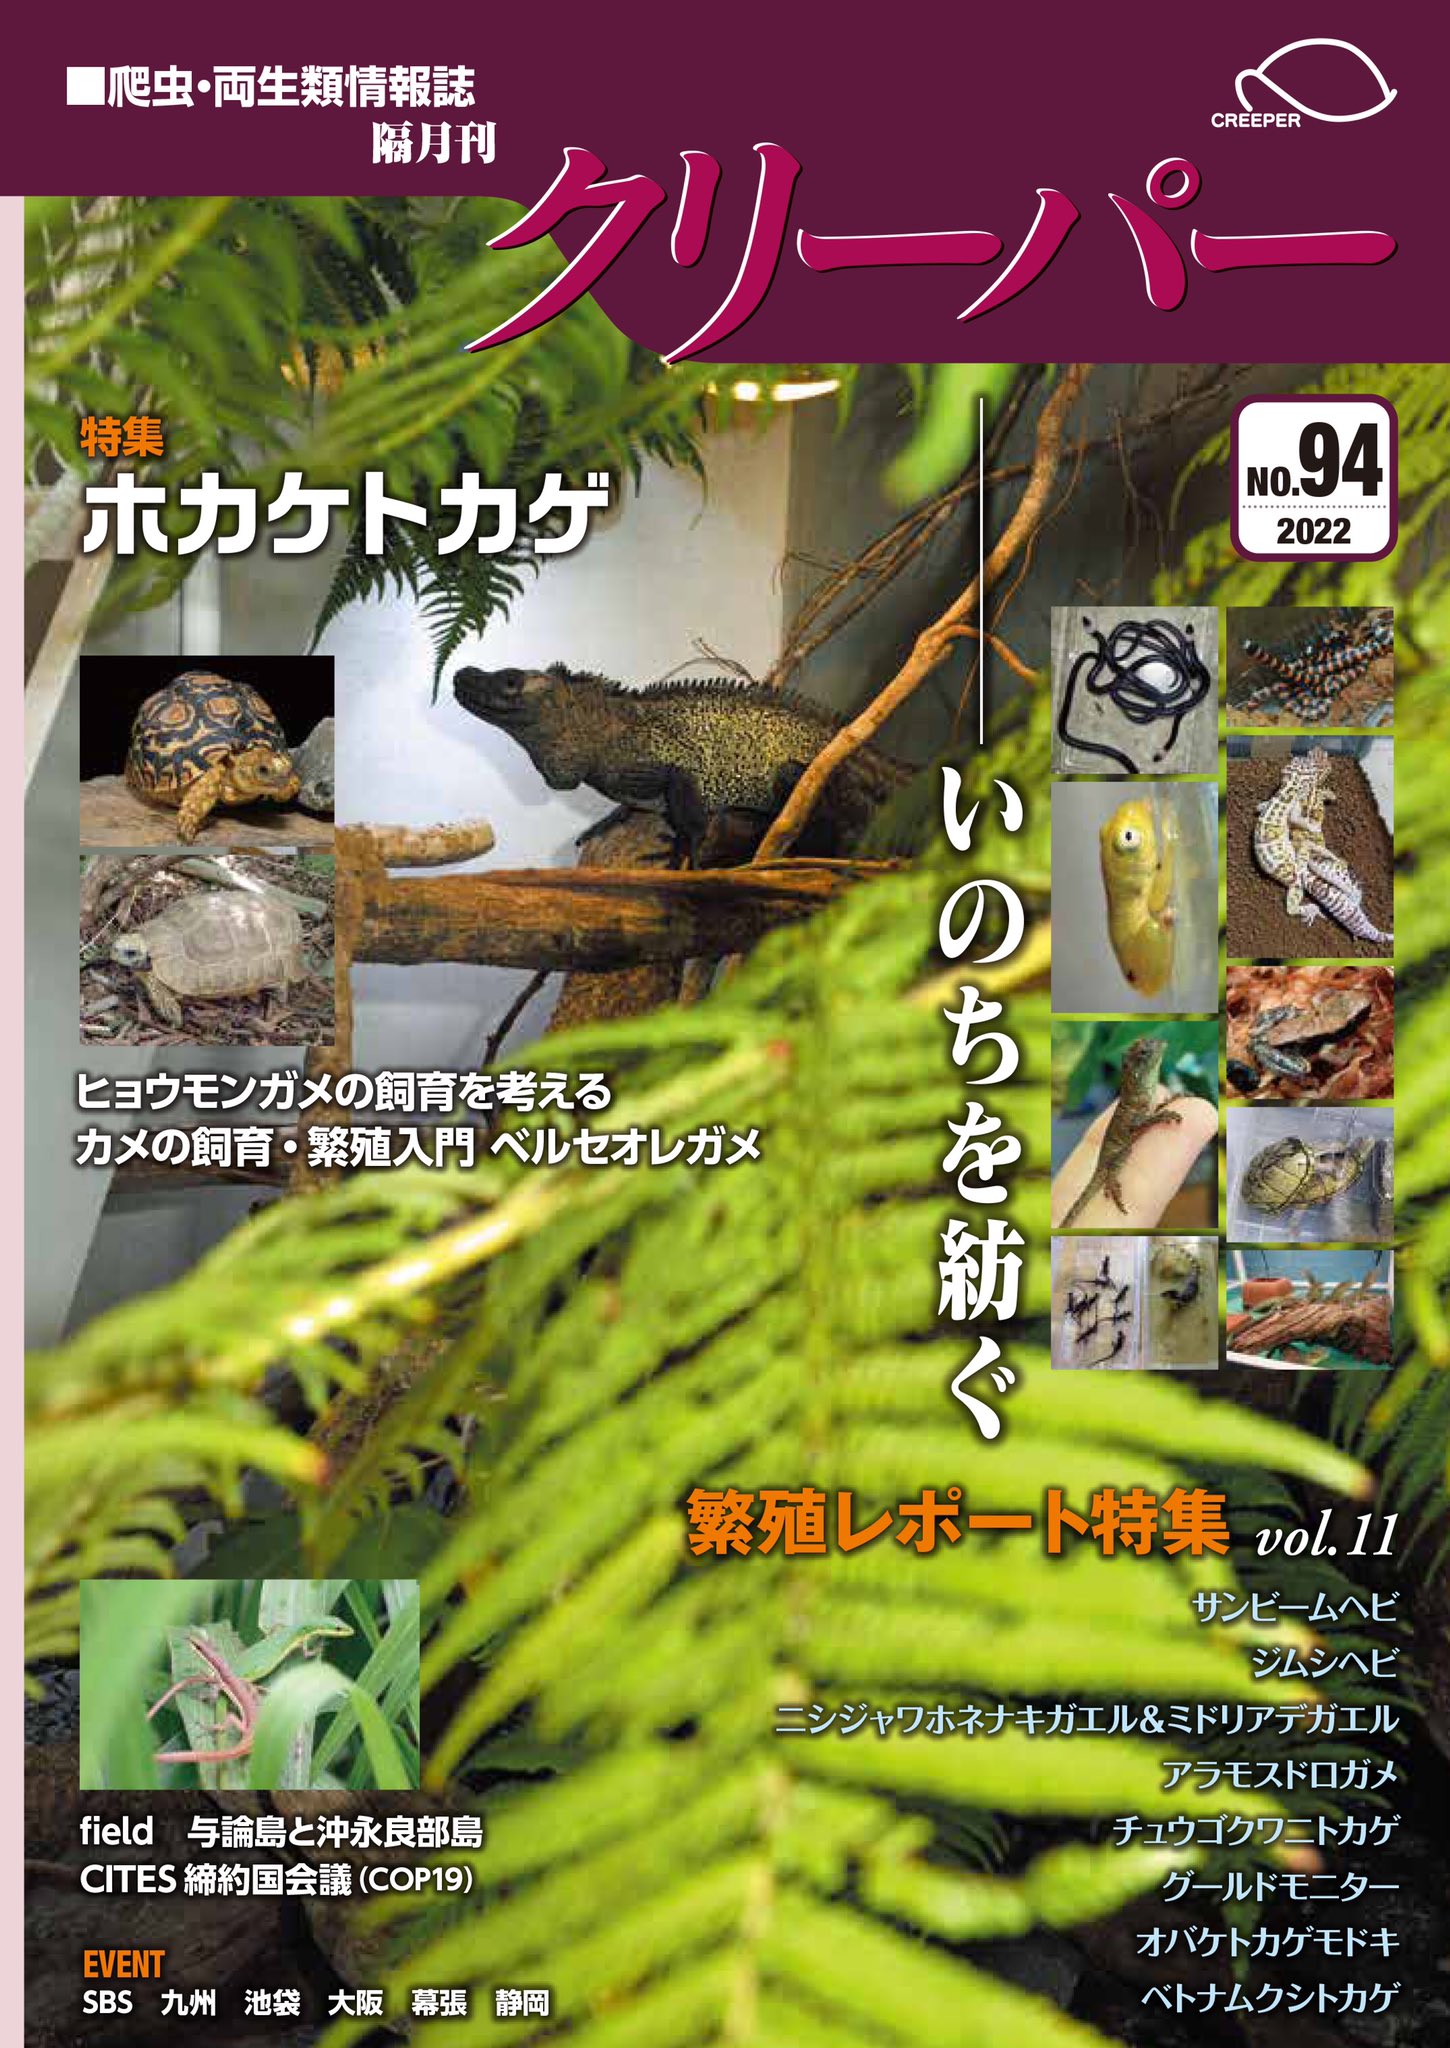 クリーパー No.20~29 爬虫・両生類情報誌